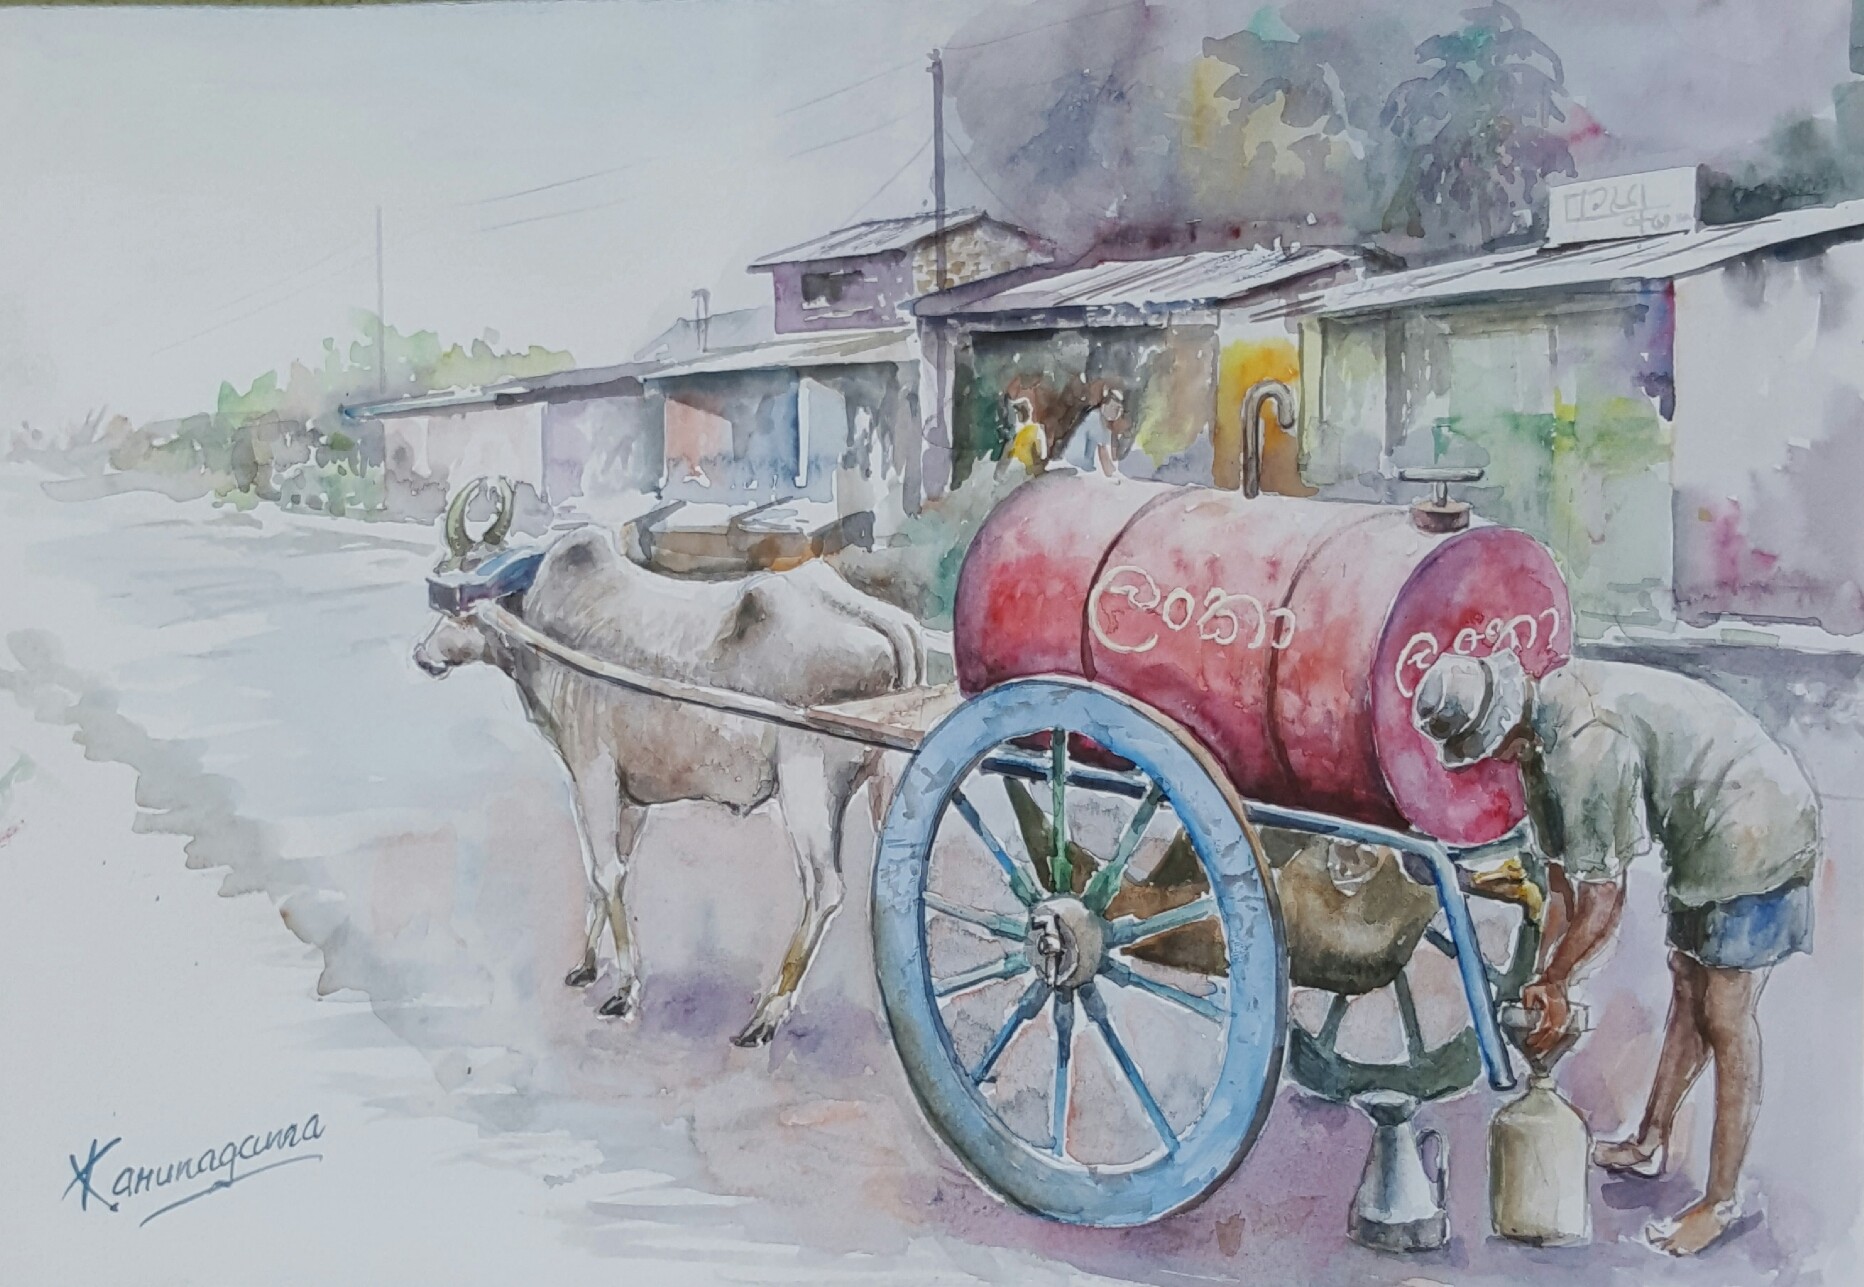 Kerosene cart by Sarath Karunagama